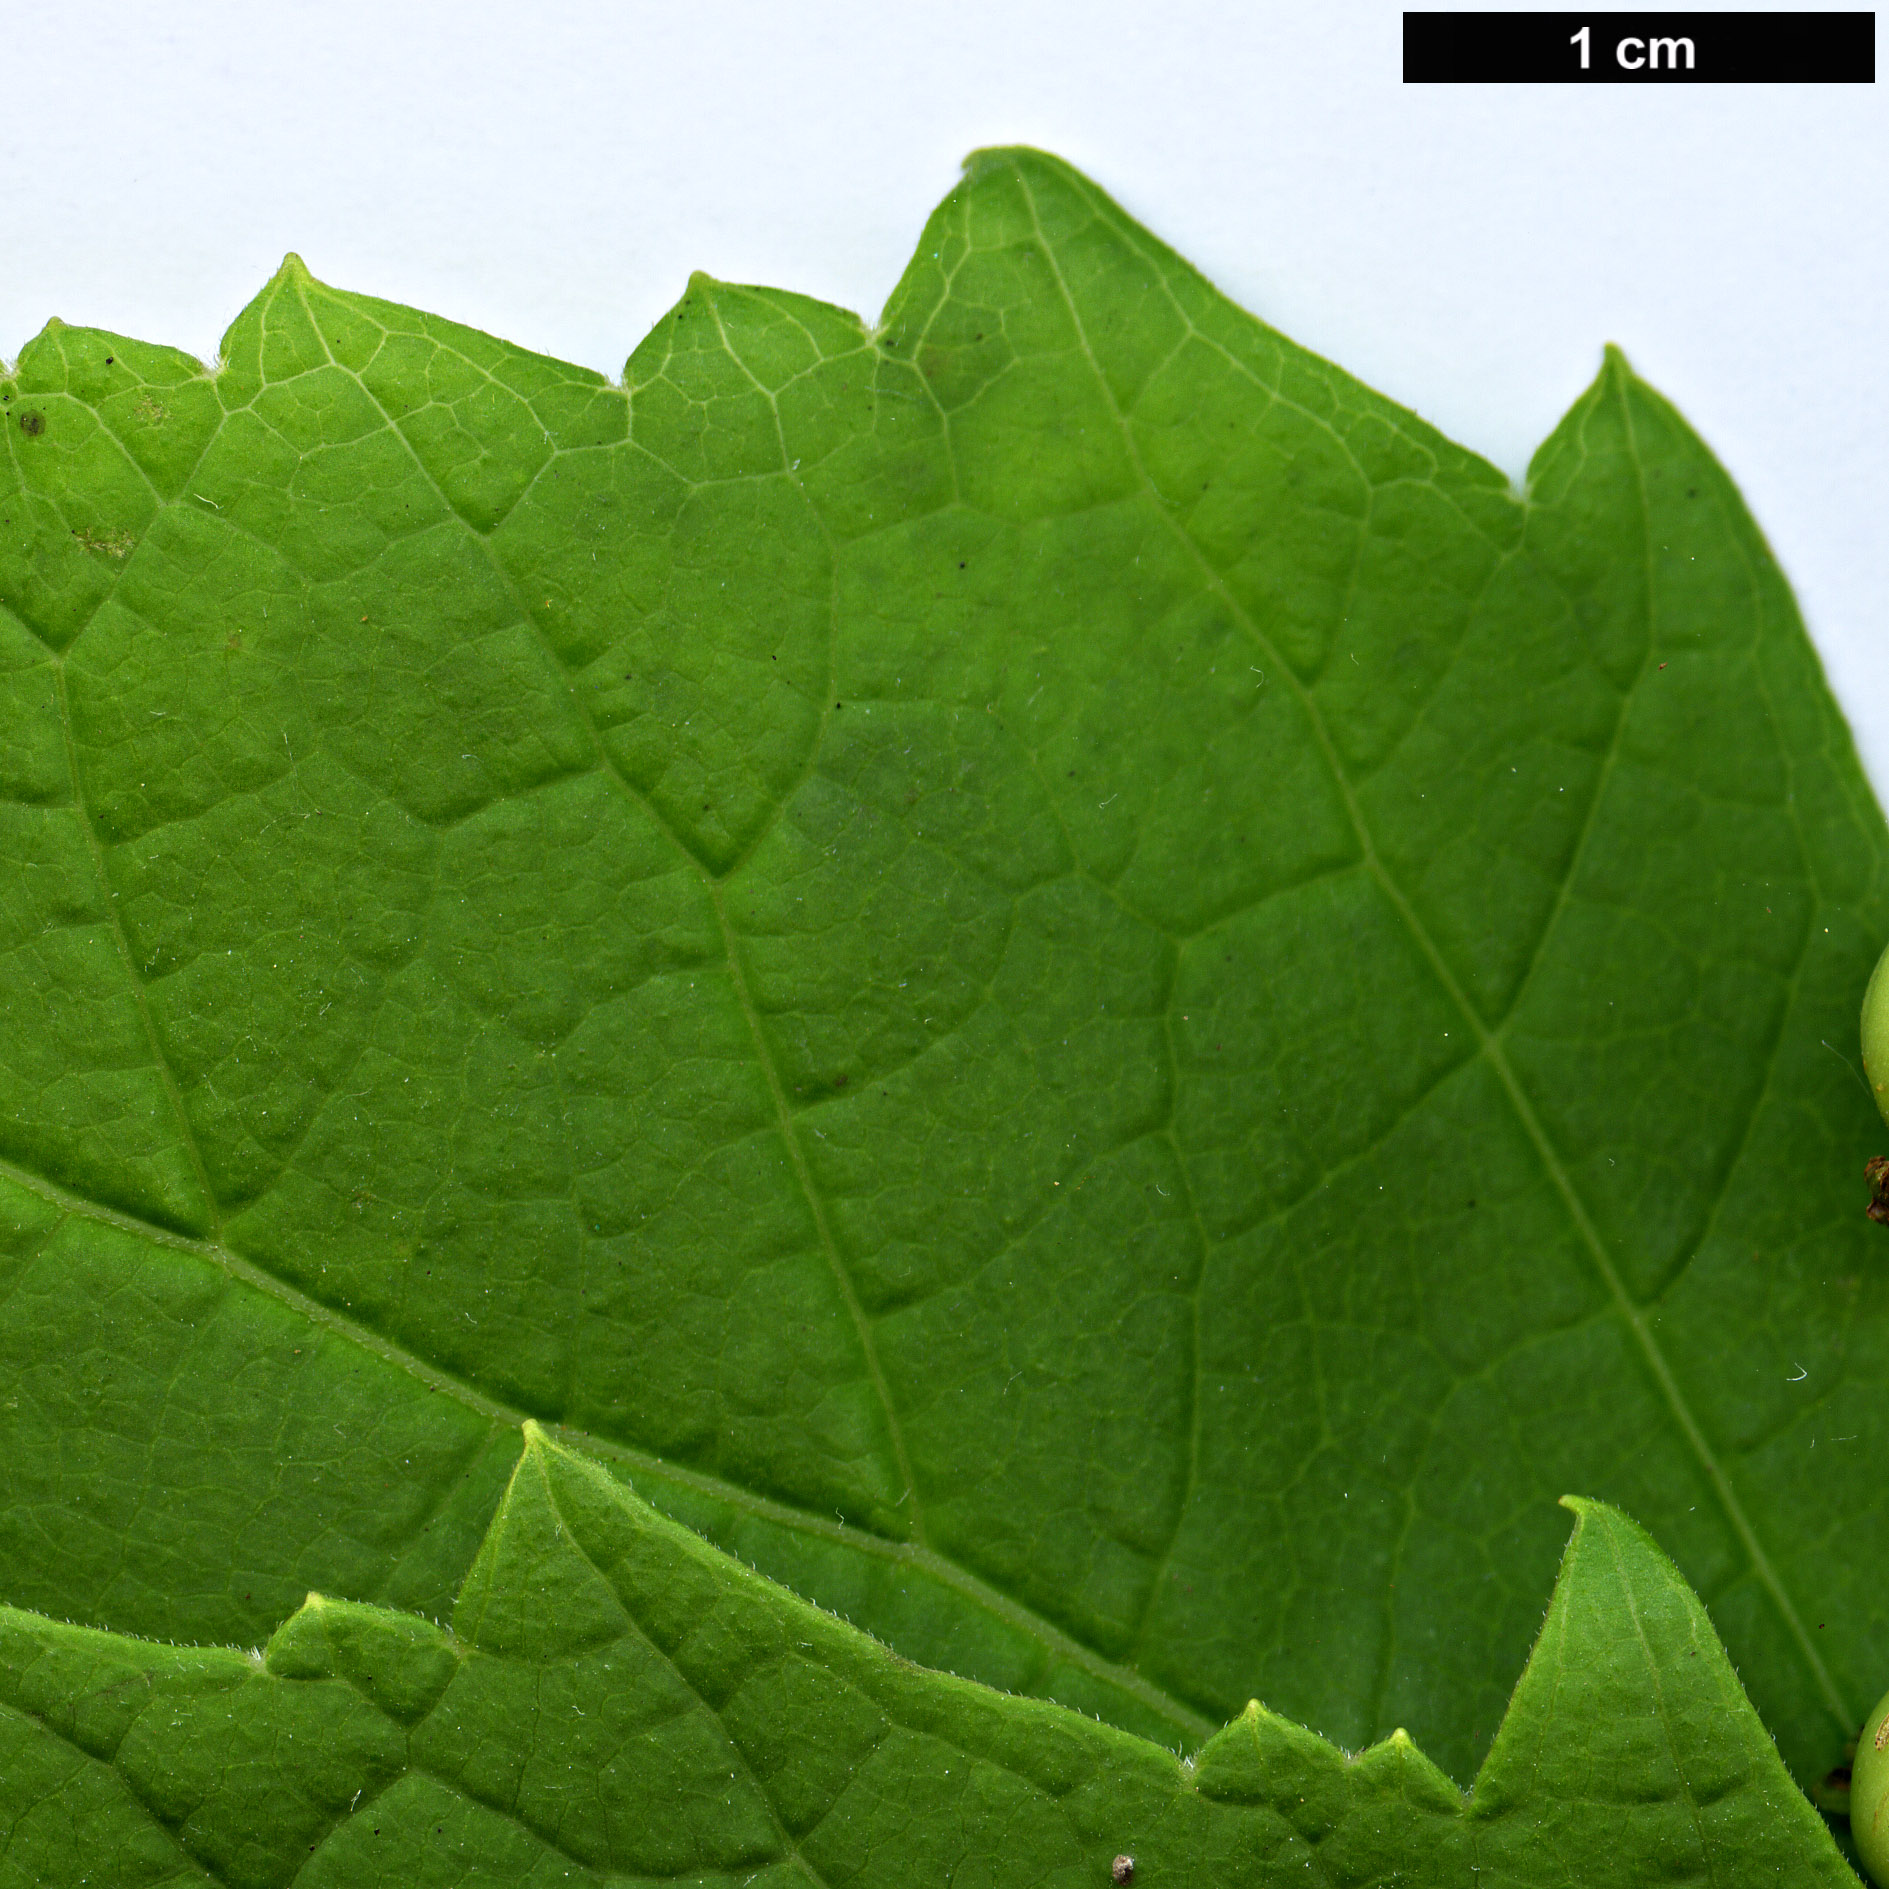 High resolution image: Family: Torricelliaceae - Genus: Torricellia - Taxon: angulata